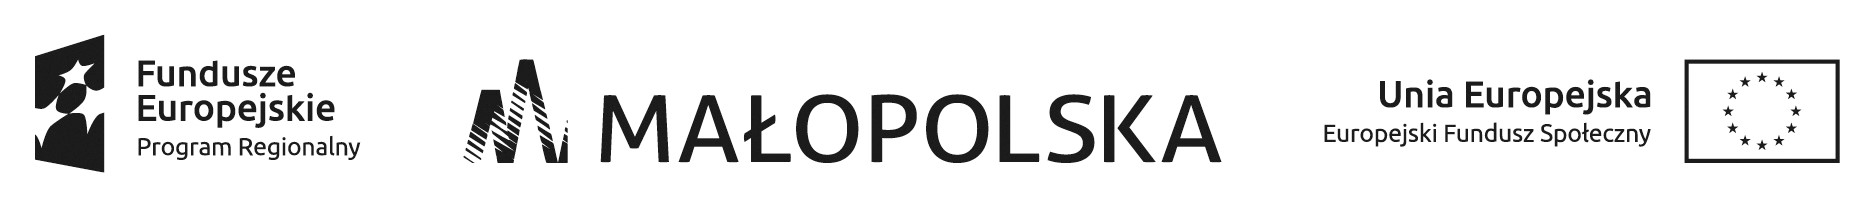 Logotypy: Fundusze Europejskie Program Regionalny, Małopolska, Unia Europejska Europejski Fundusz Społeczny